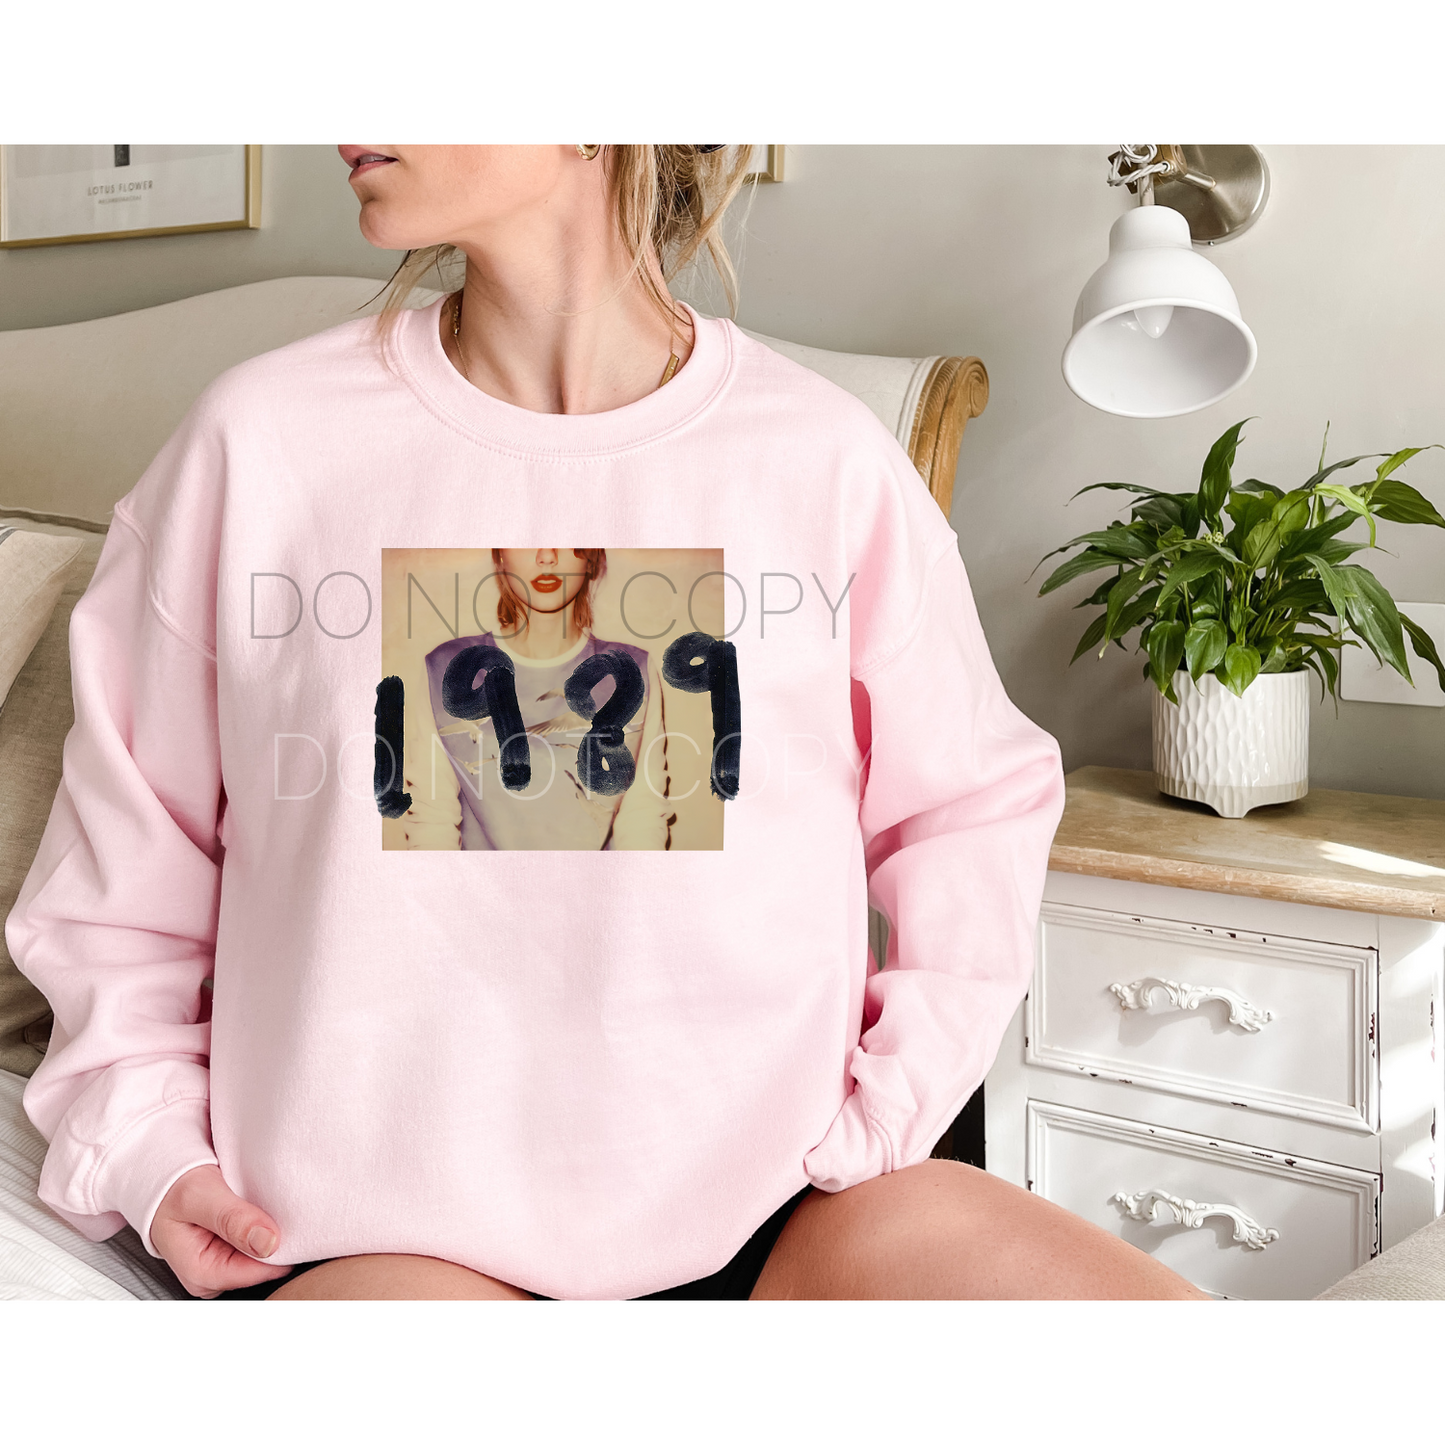 Taylor 1989 Sweatshirt